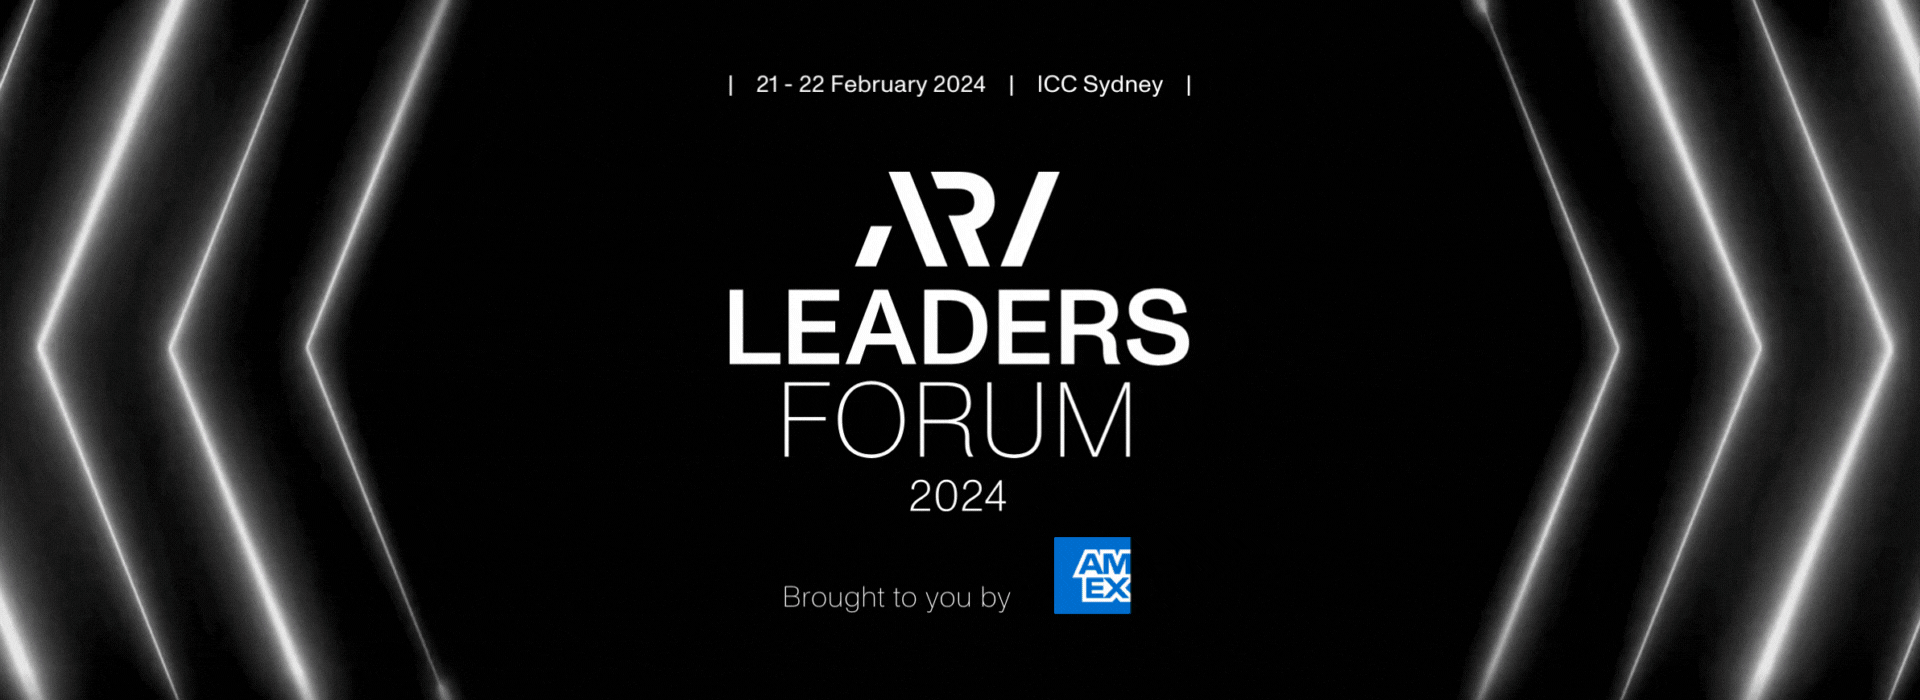 ARA Leaders Forum 2024